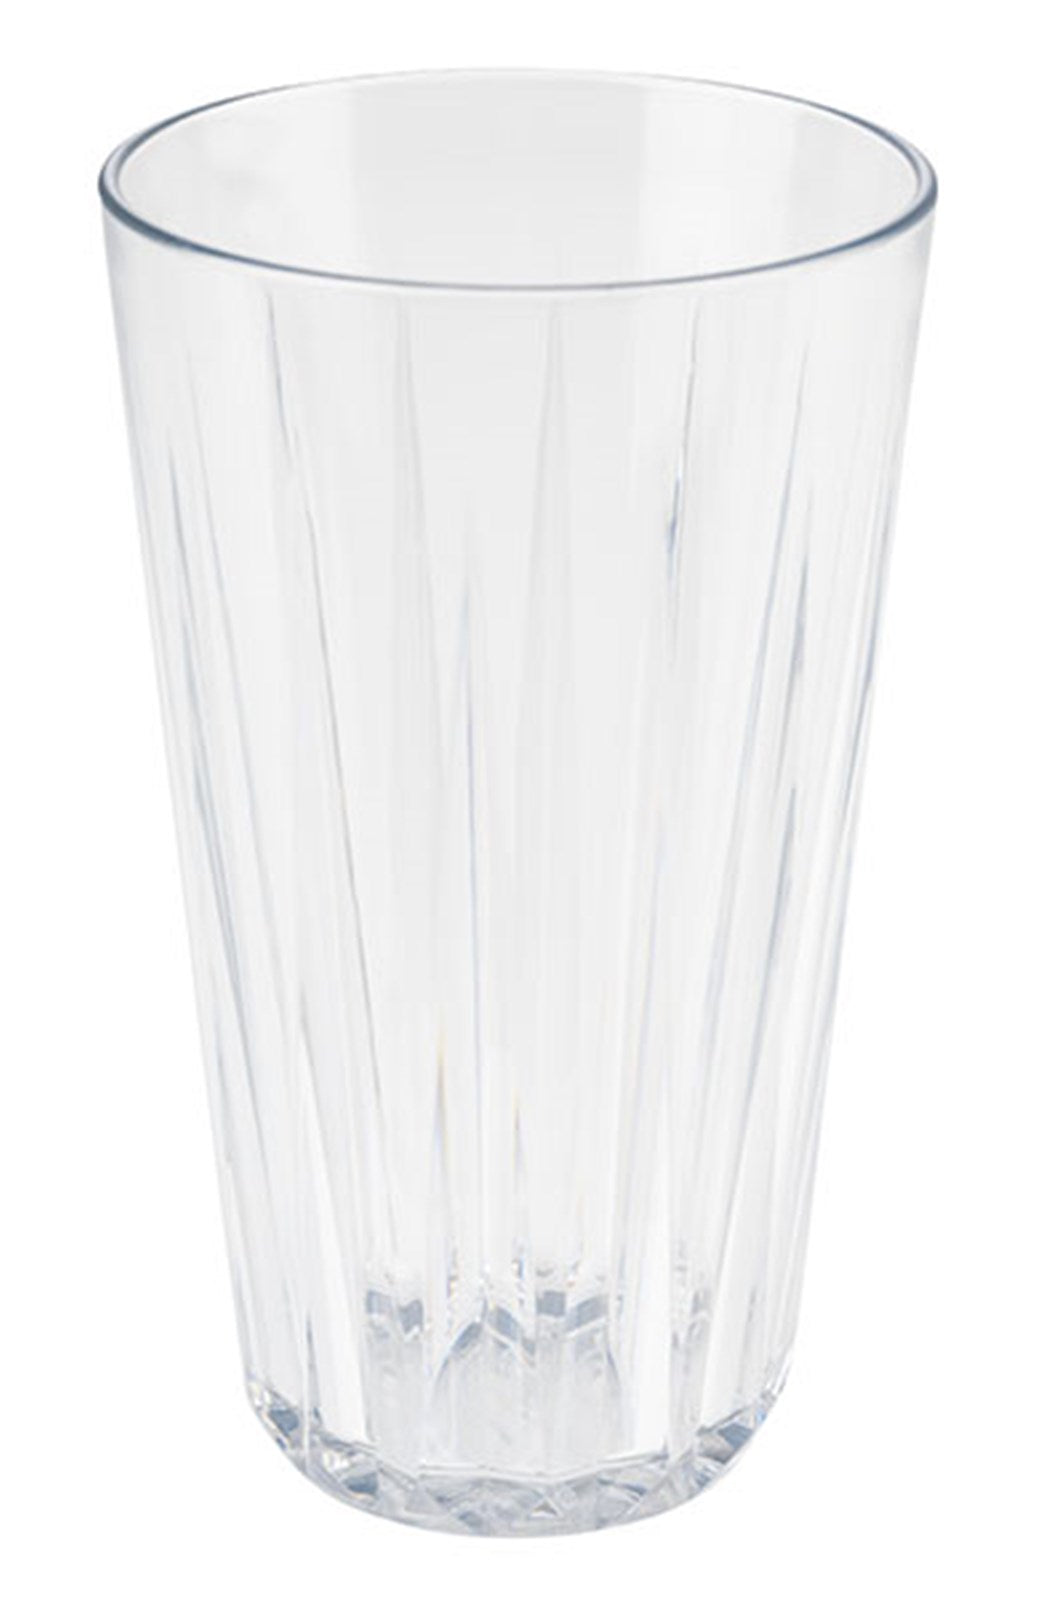 Trinkbecher Crystal transparent 500ml in Transparent präsentiert im Onlineshop von KAQTU Design AG. Glas ist von Buffet&Display